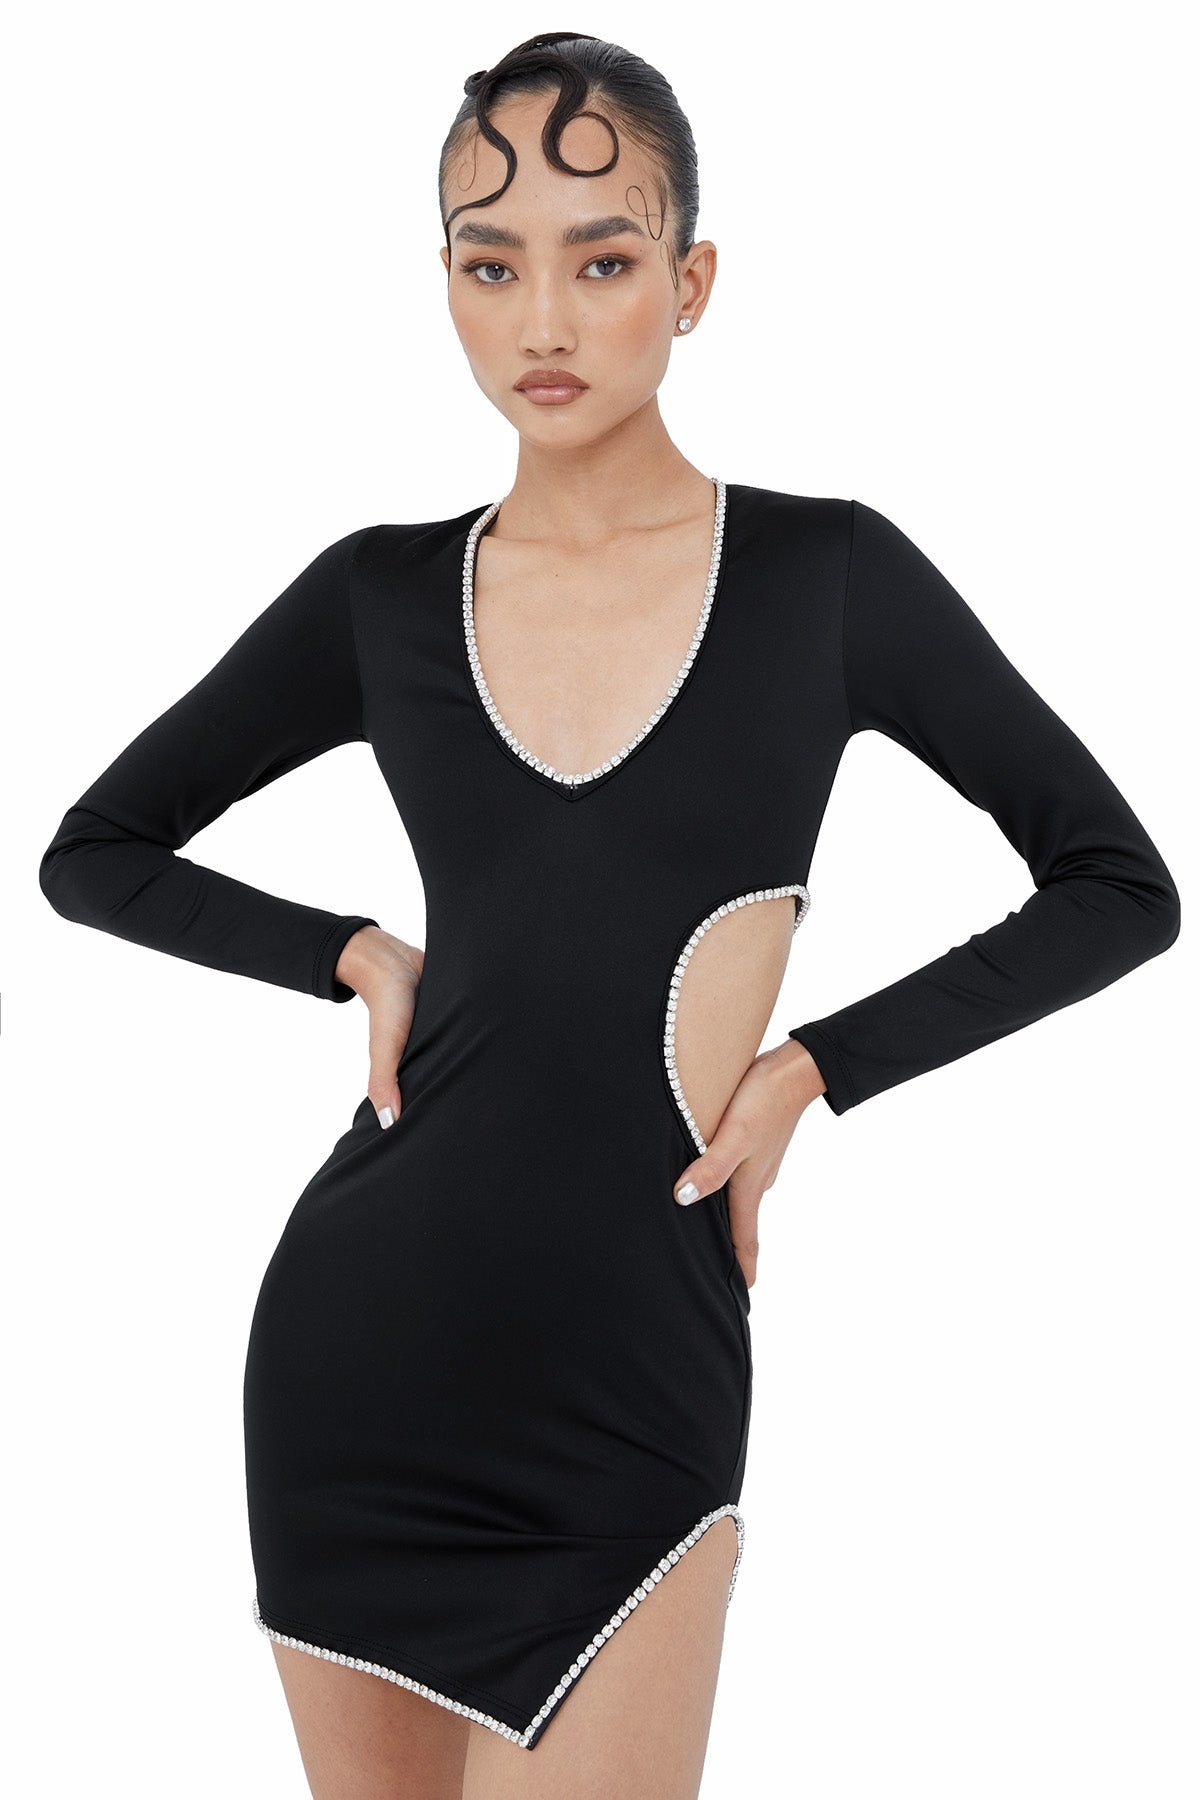 Kira Dress - Mini - Black - Sample